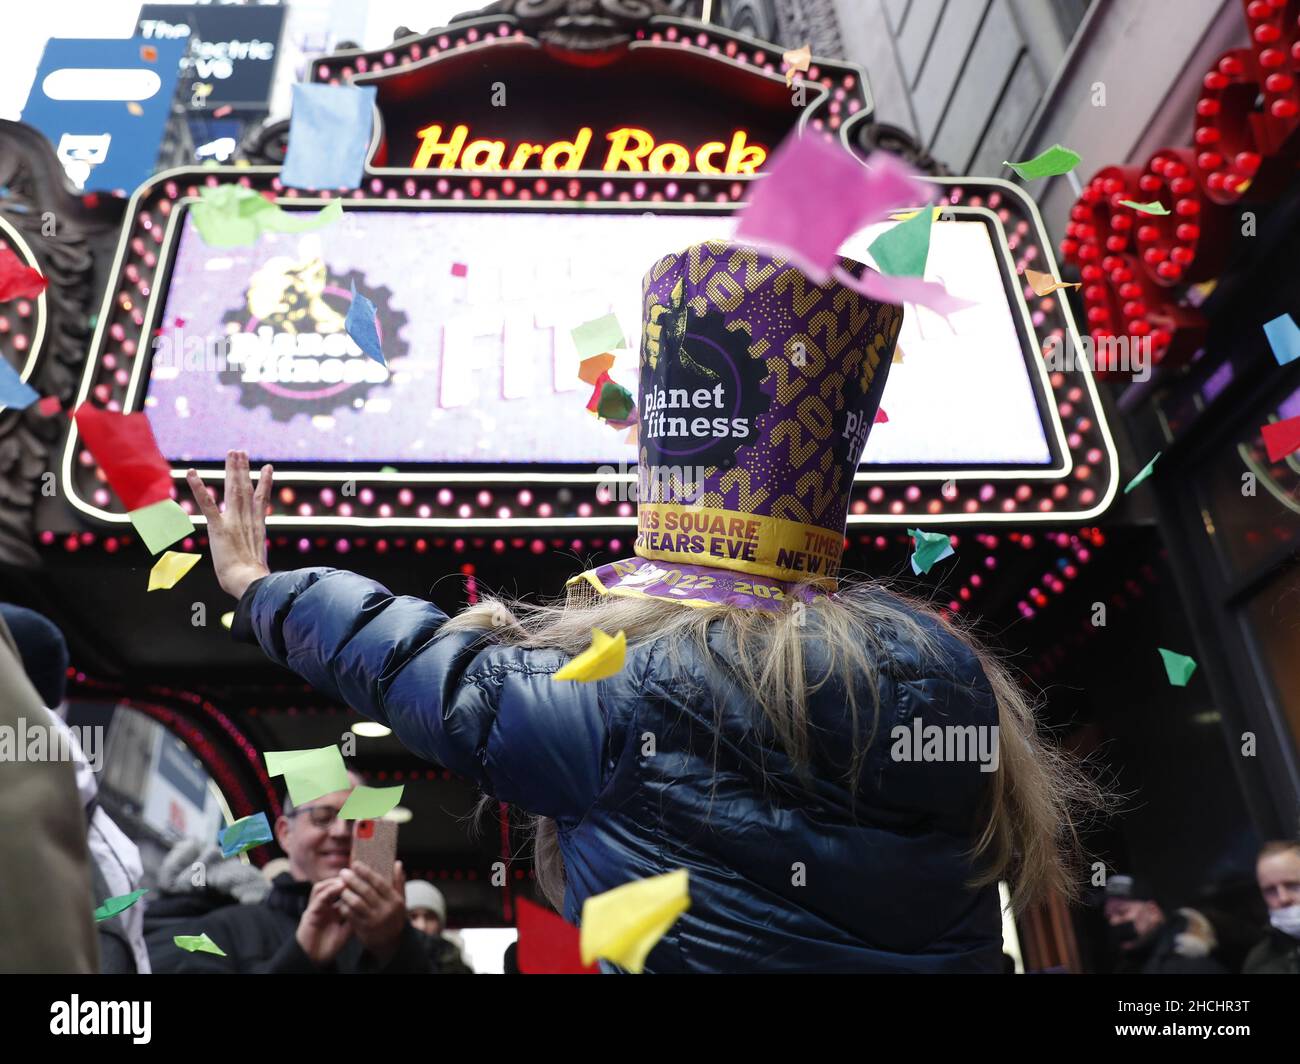 New York, Usa. 29th Dez 2021. Zwei Tage vor der Silvesterfeier auf dem Times Square in New York City am Mittwoch, dem 29. Dezember 2021, testen die Organisatoren und der Presenting Sponsor Planet Fitness die Lufttüchtigkeit von Konfetti vom Hard Rock Cafe Marquee. Foto von John Angelillo/UPI Credit: UPI/Alamy Live News Stockfoto